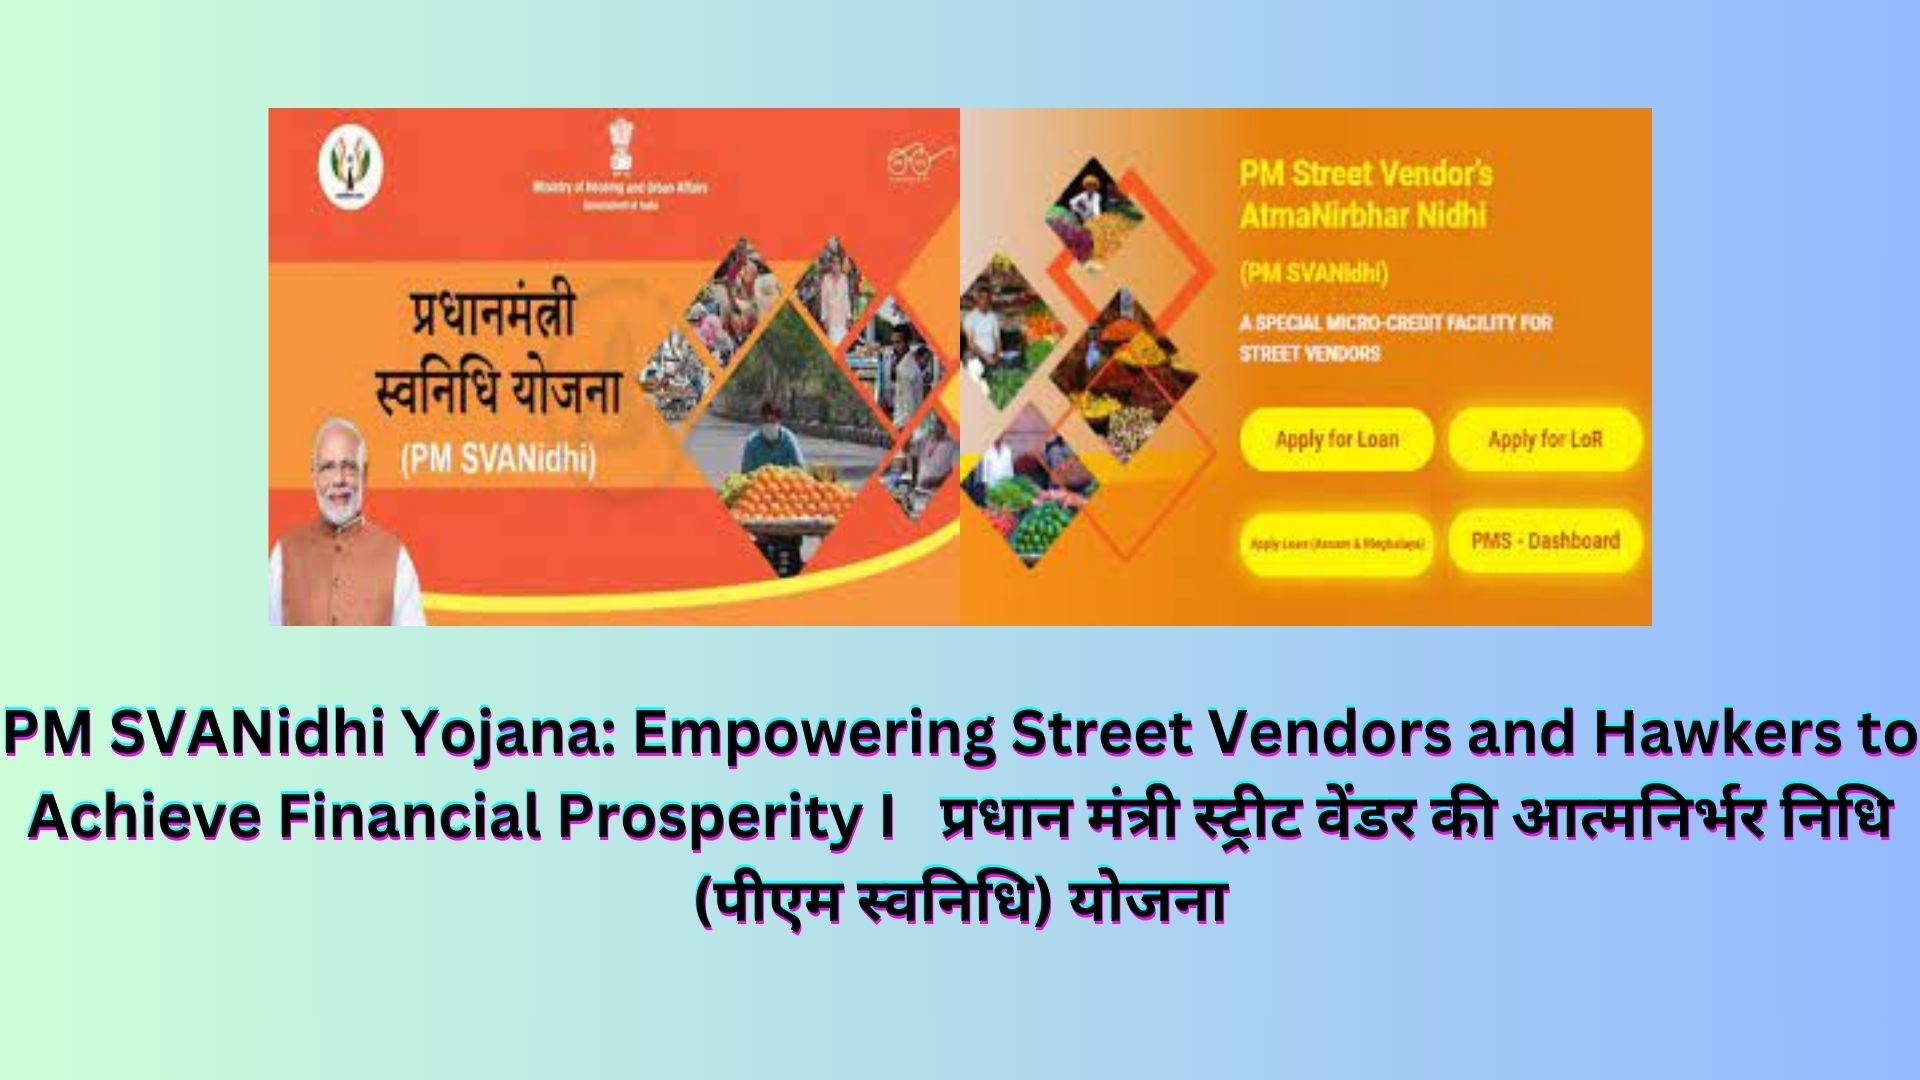 PM SVANidhi Yojana: Empowering Street Vendors and Hawkers to Achieve Financial Prosperity I पीएम स्वानिधि के लिए कौन पात्र हैं? इस योजना के तहत ऋण लेने वाले रेहड़ी-पटरी वाले सभी ऋणों अर्थात पहले, दूसरे और तीसरे ऋण के लिए 7% की दर से ब्याज सब्सिडी प्राप्त करने के पात्र हैं। प्रधान मंत्री स्ट्रीट वेंडर की आत्मनिर्भर निधि (पीएम स्वनिधि) योजना